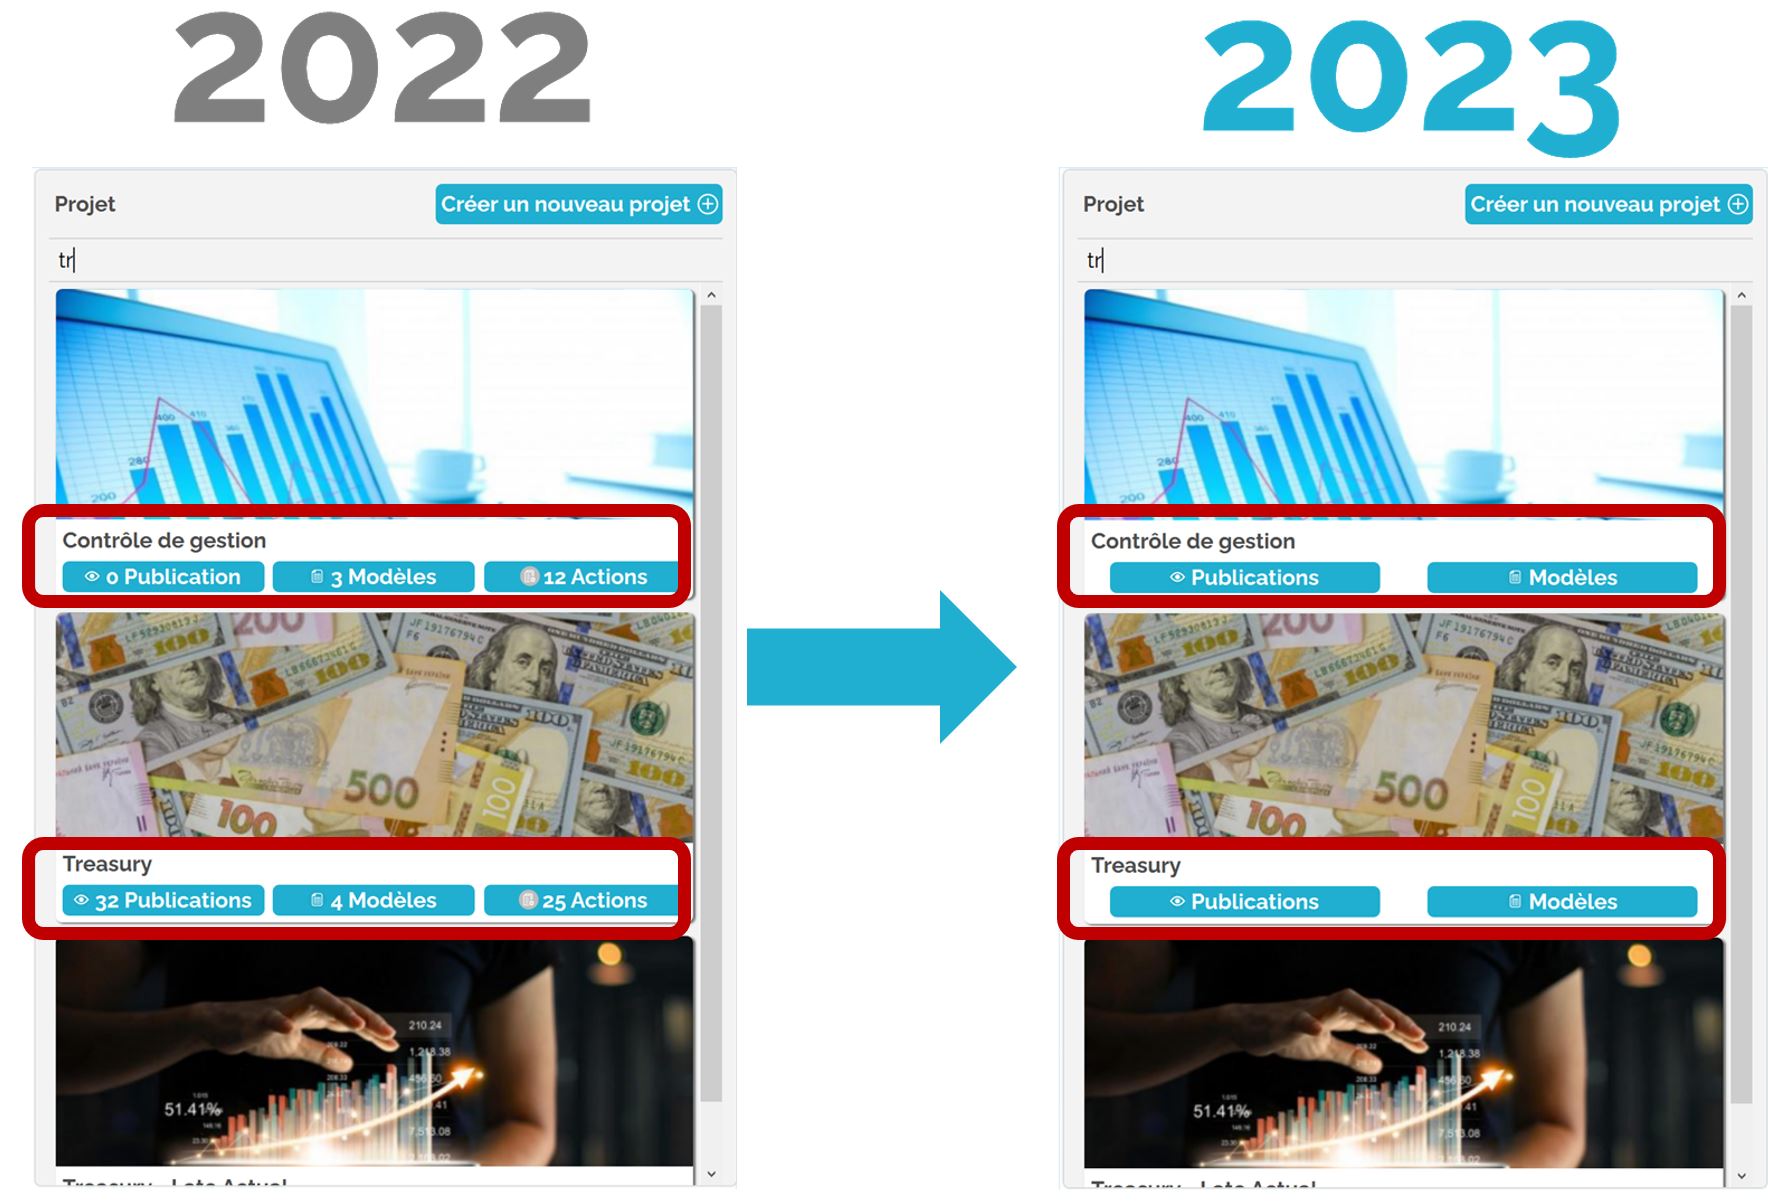 Comparatif page d'accueil 2022 vs 2023